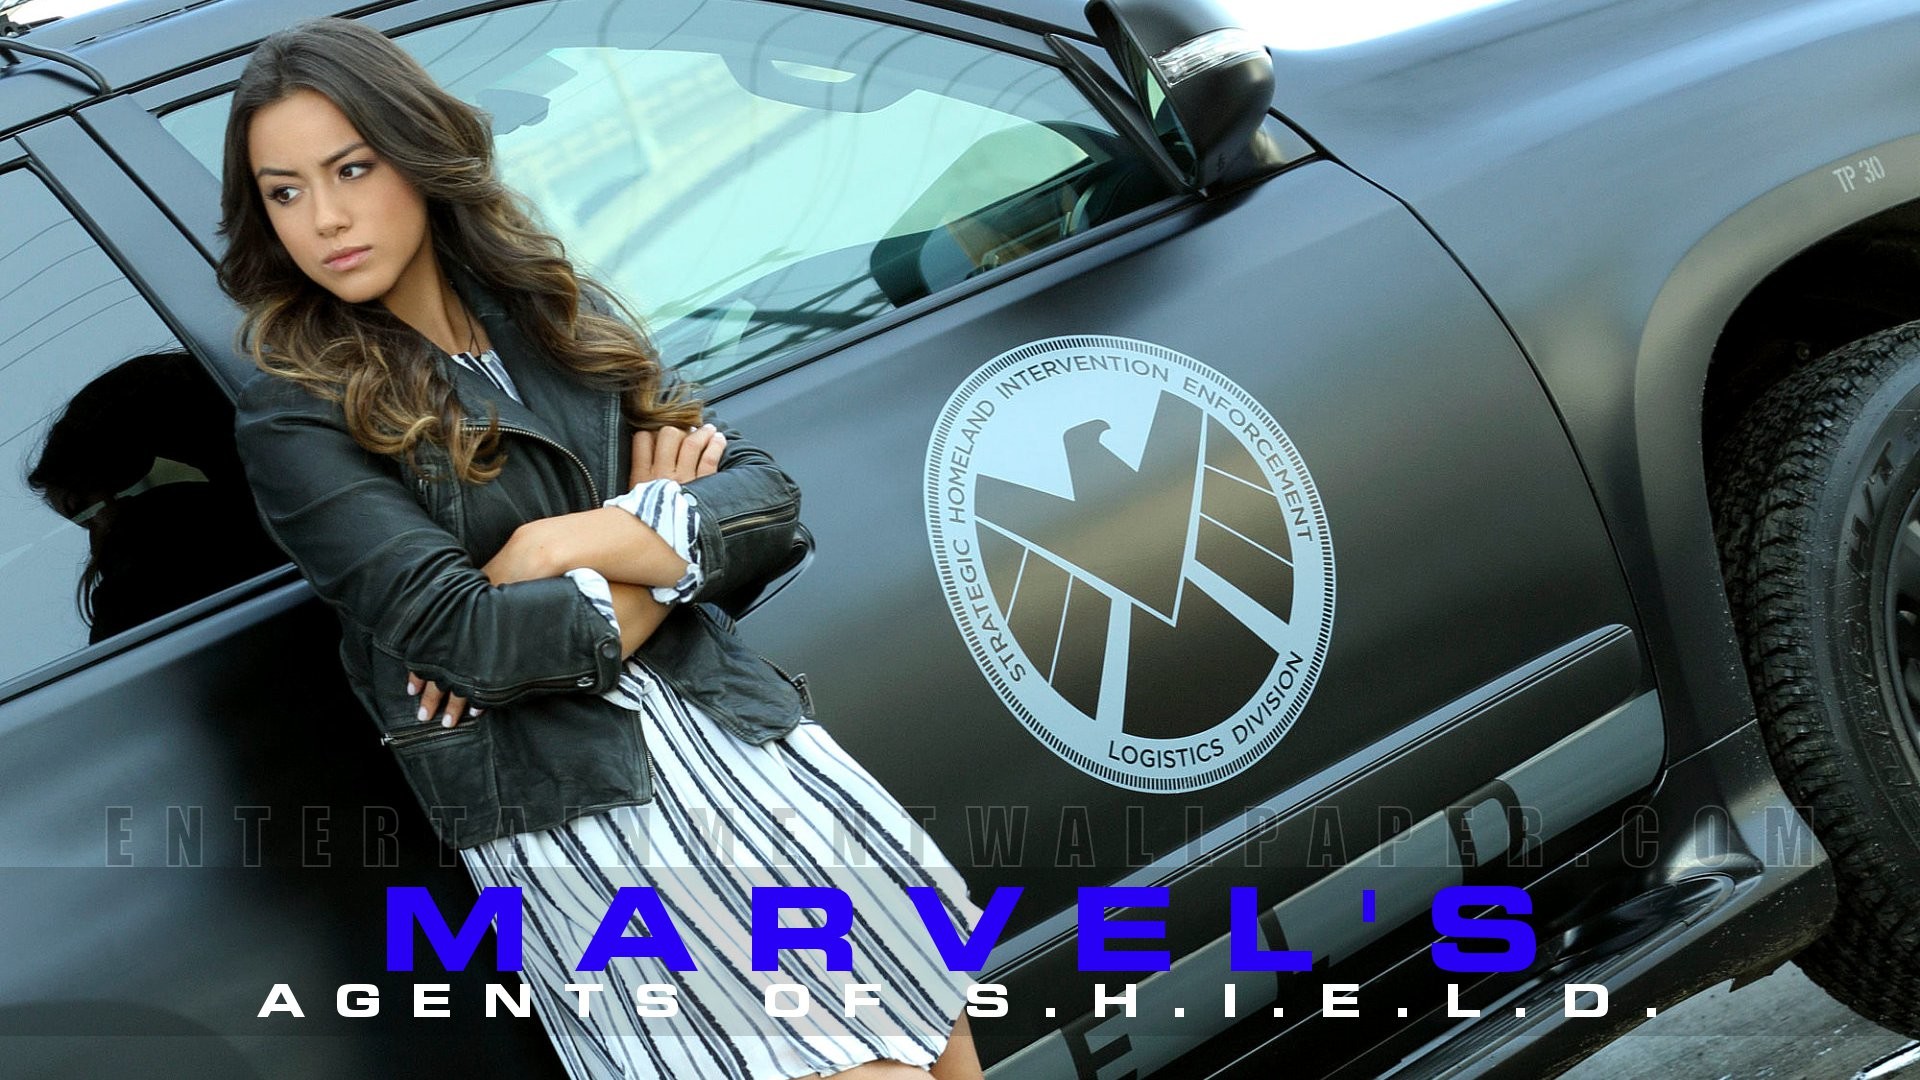 Marvels Agents of S.H.I.E.L.D. Wallpaper – Original size,